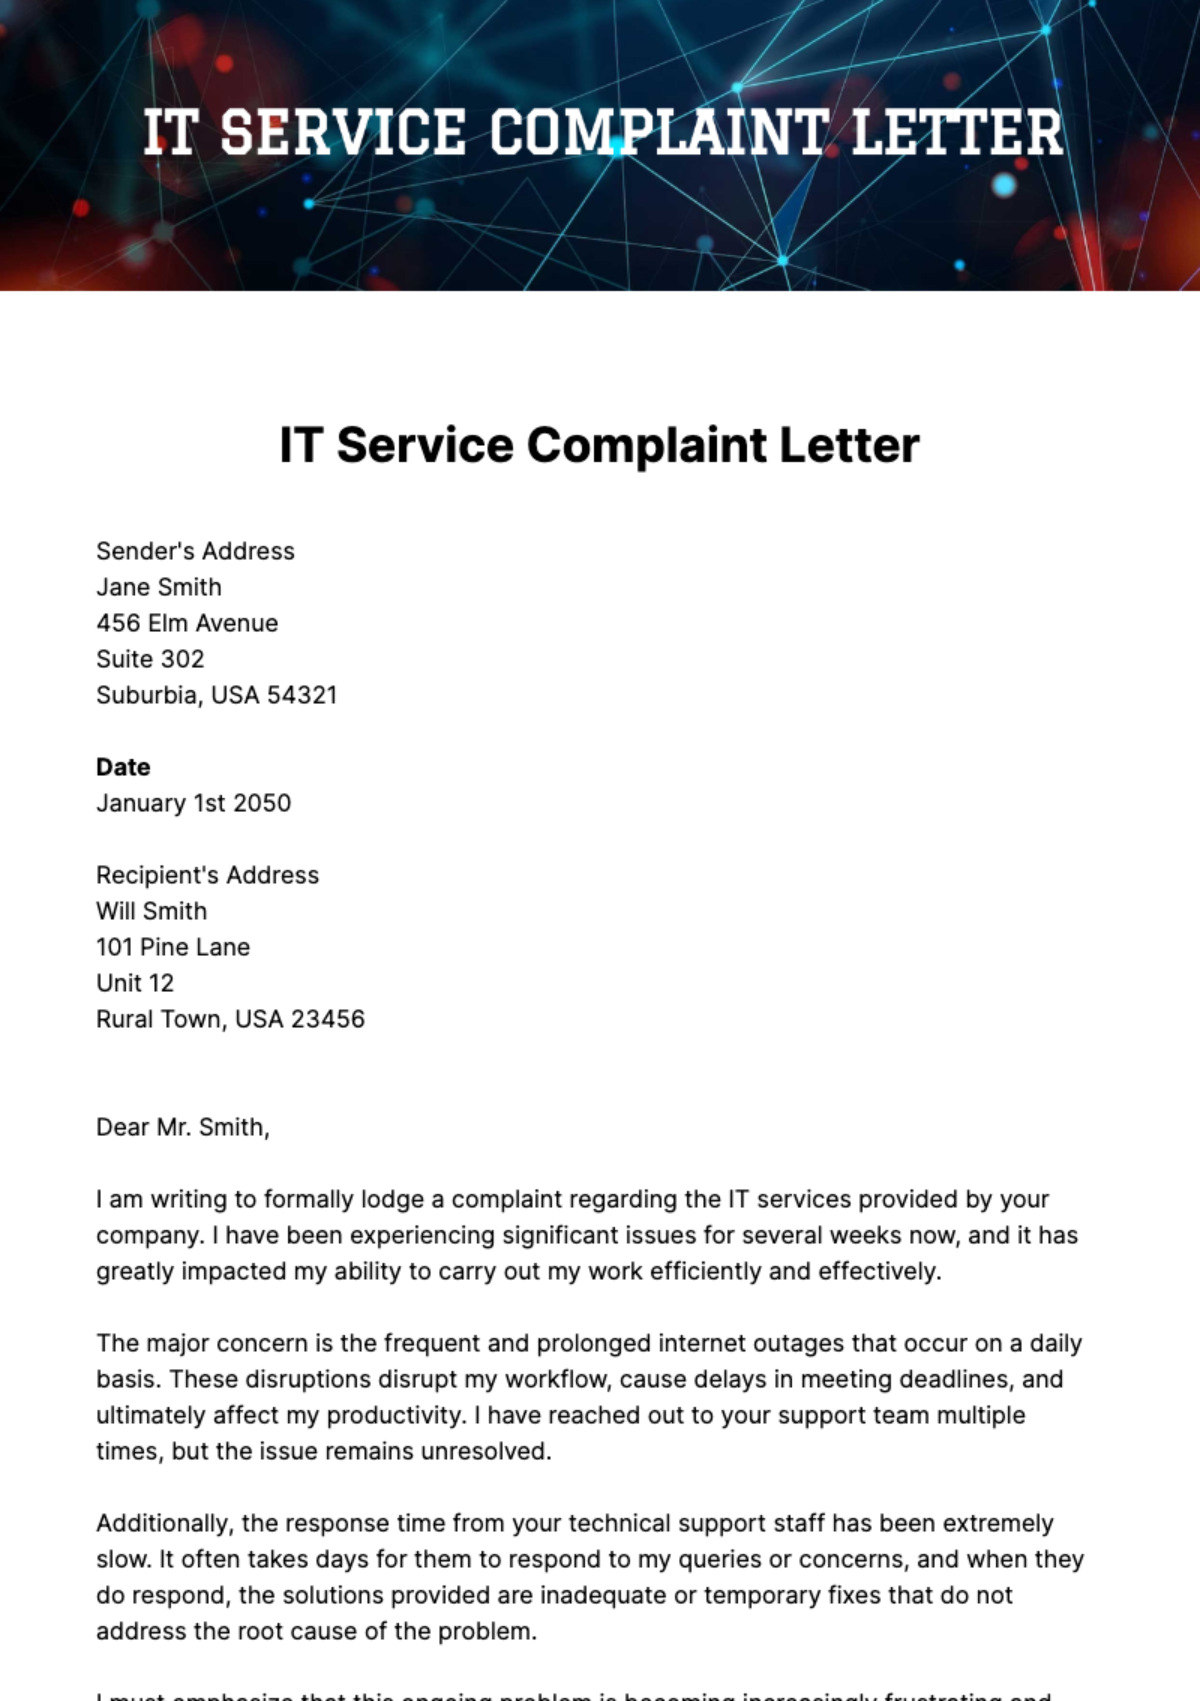 IT Service Complaint Letter Template